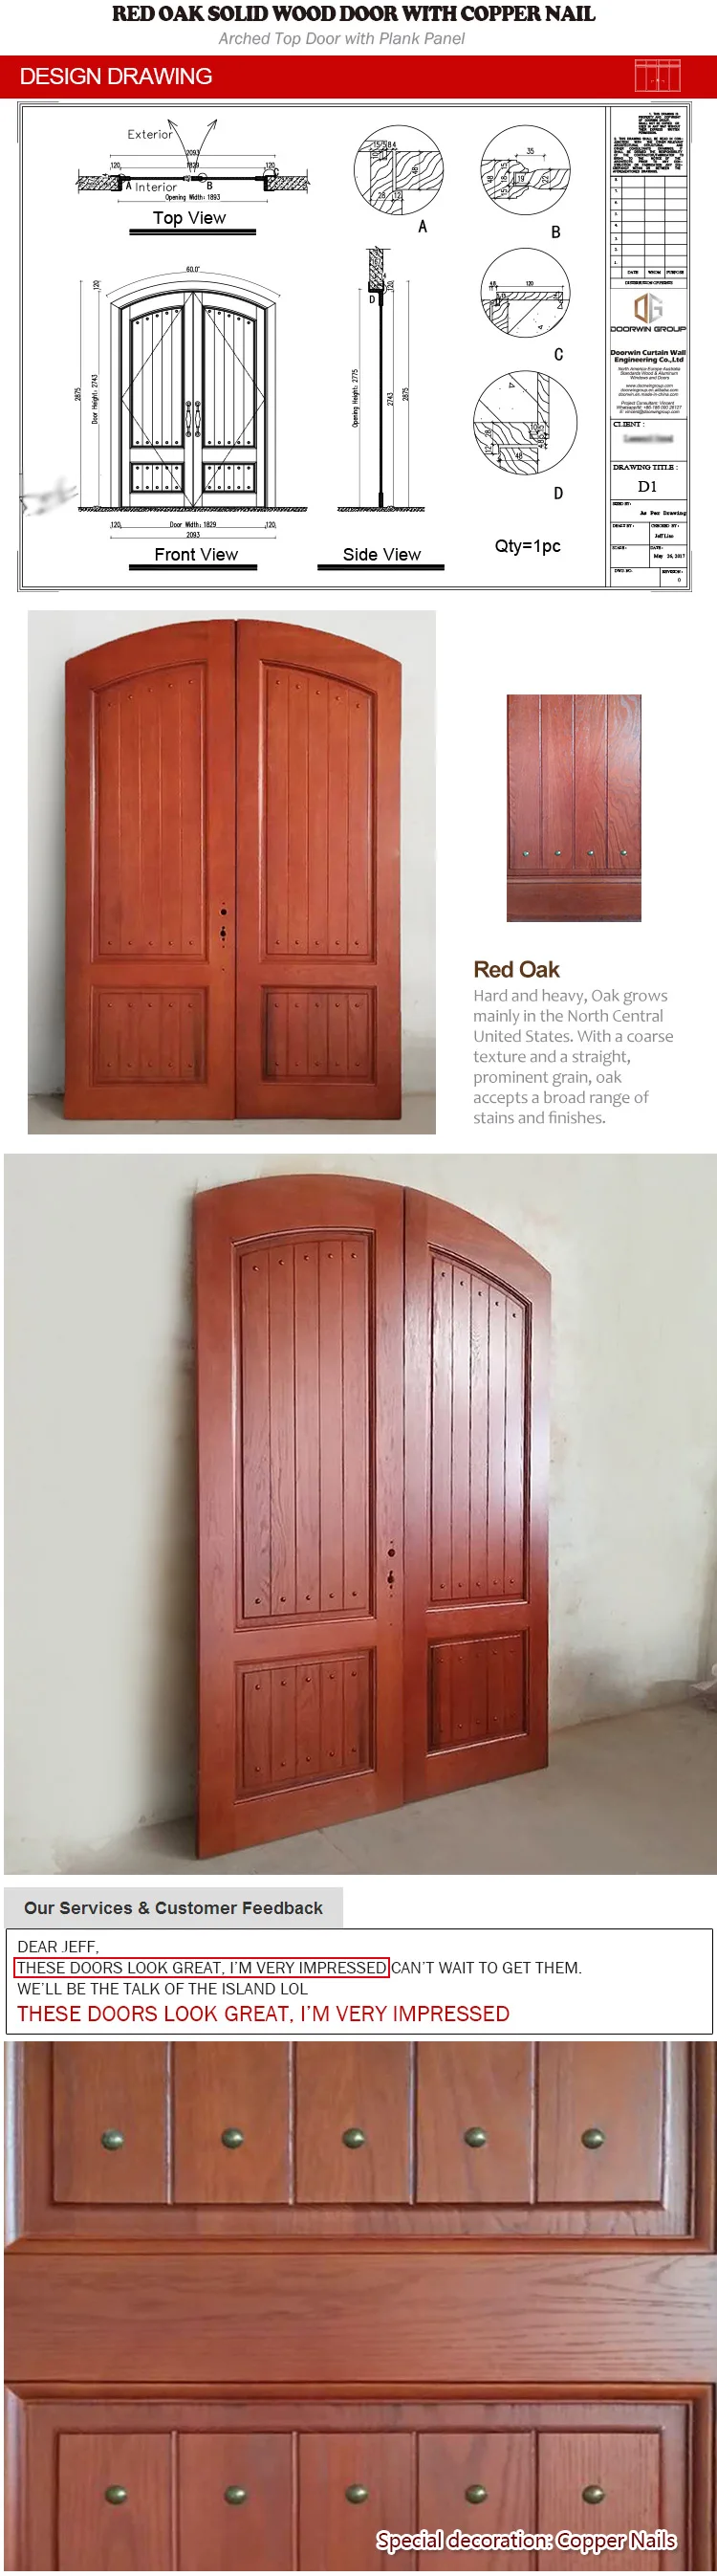 american wooden main door design TEAK OAK wood exterior door